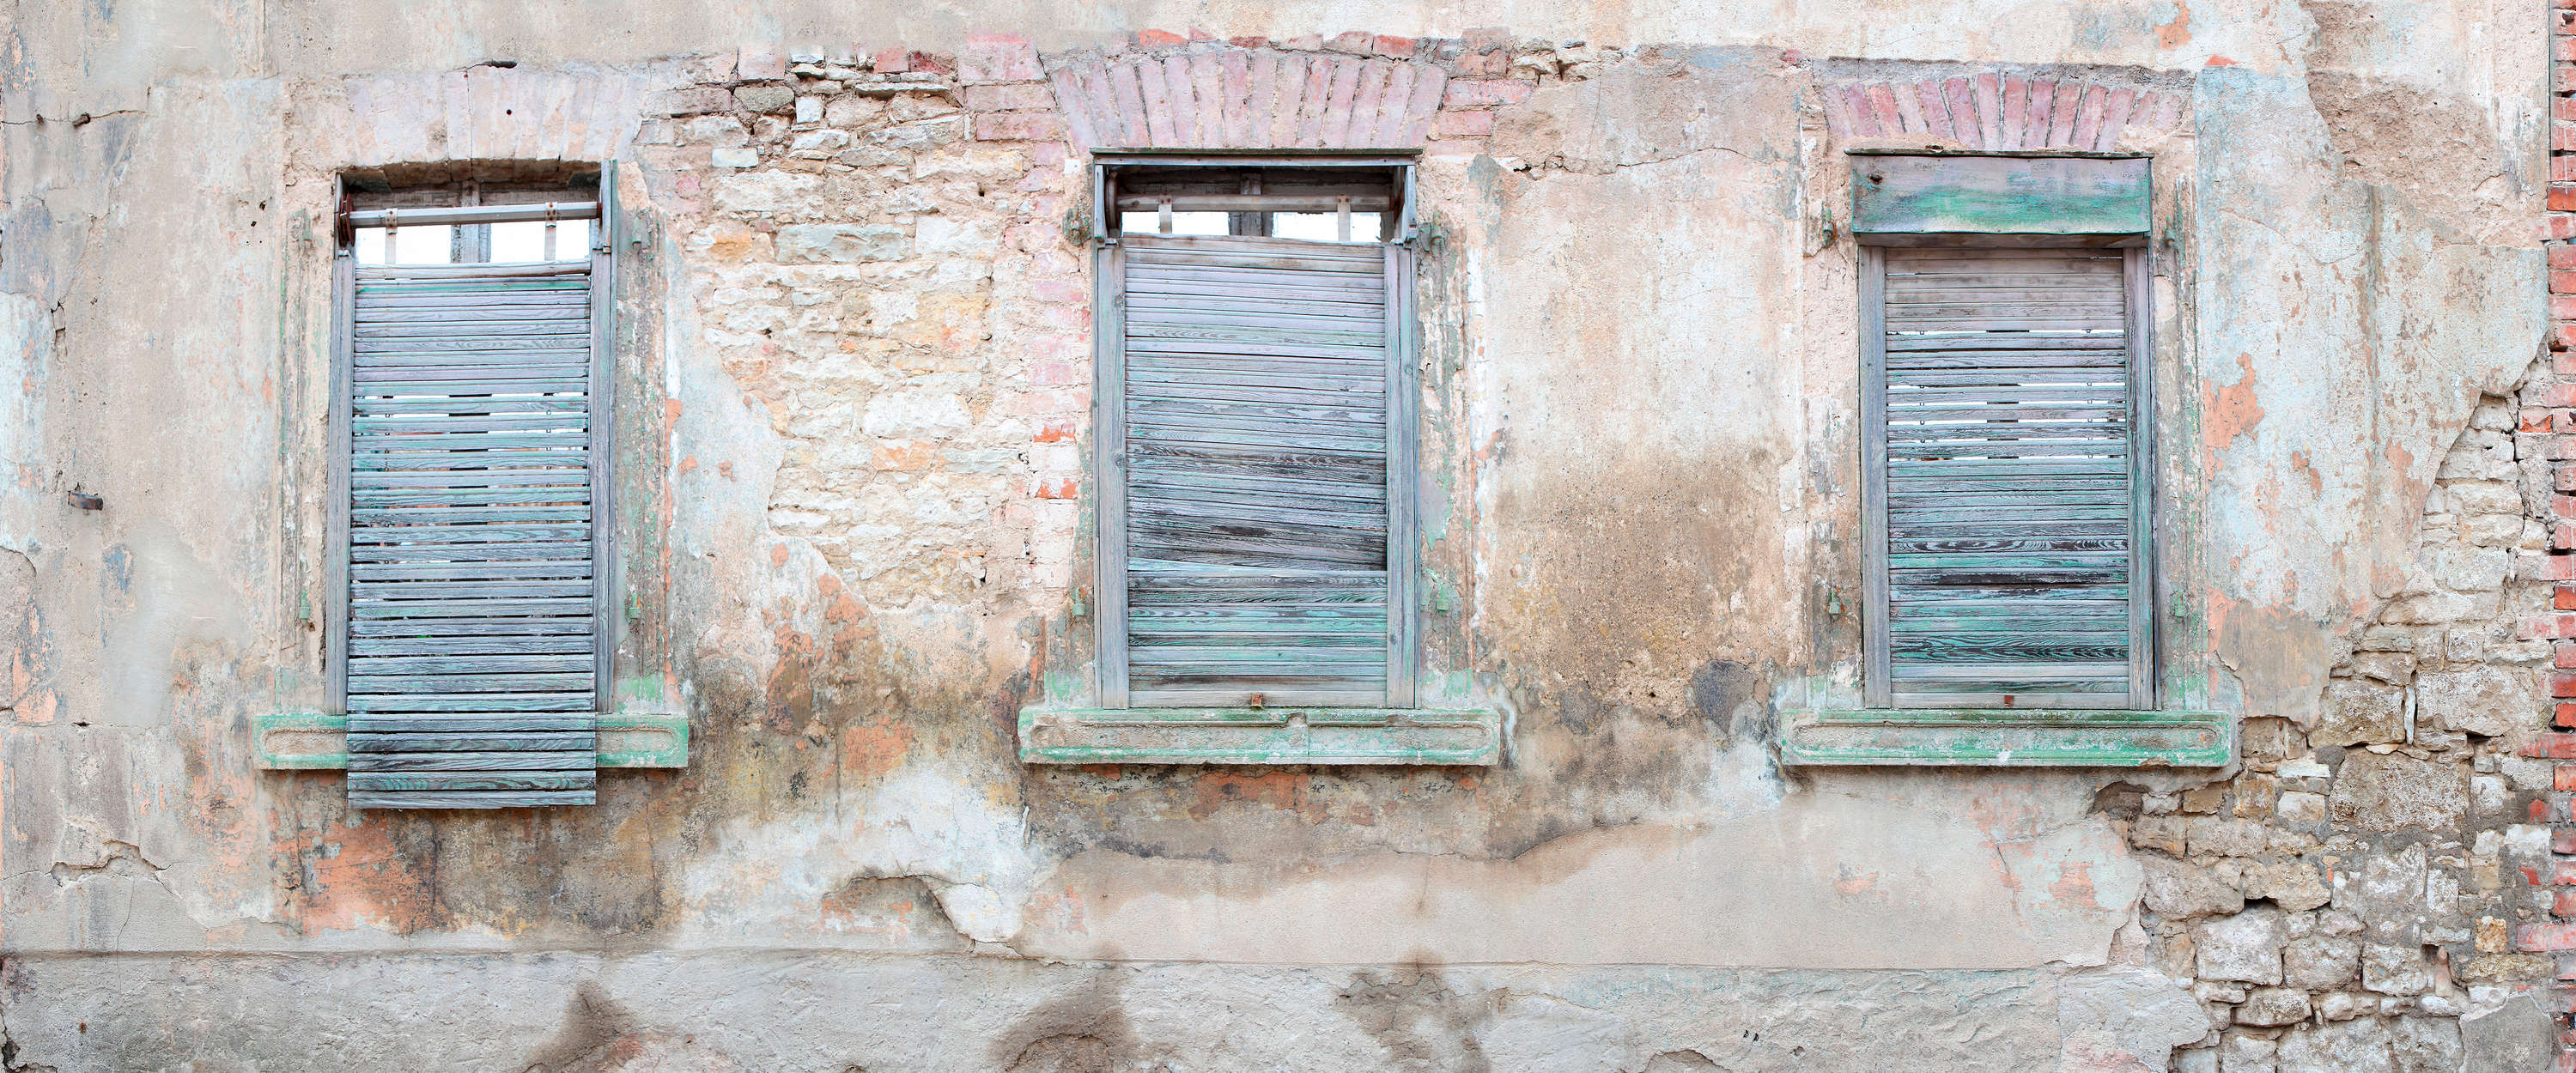             Fototapete Ziegelmauer mit rustikalen Fensterläden und Rundbögen
        